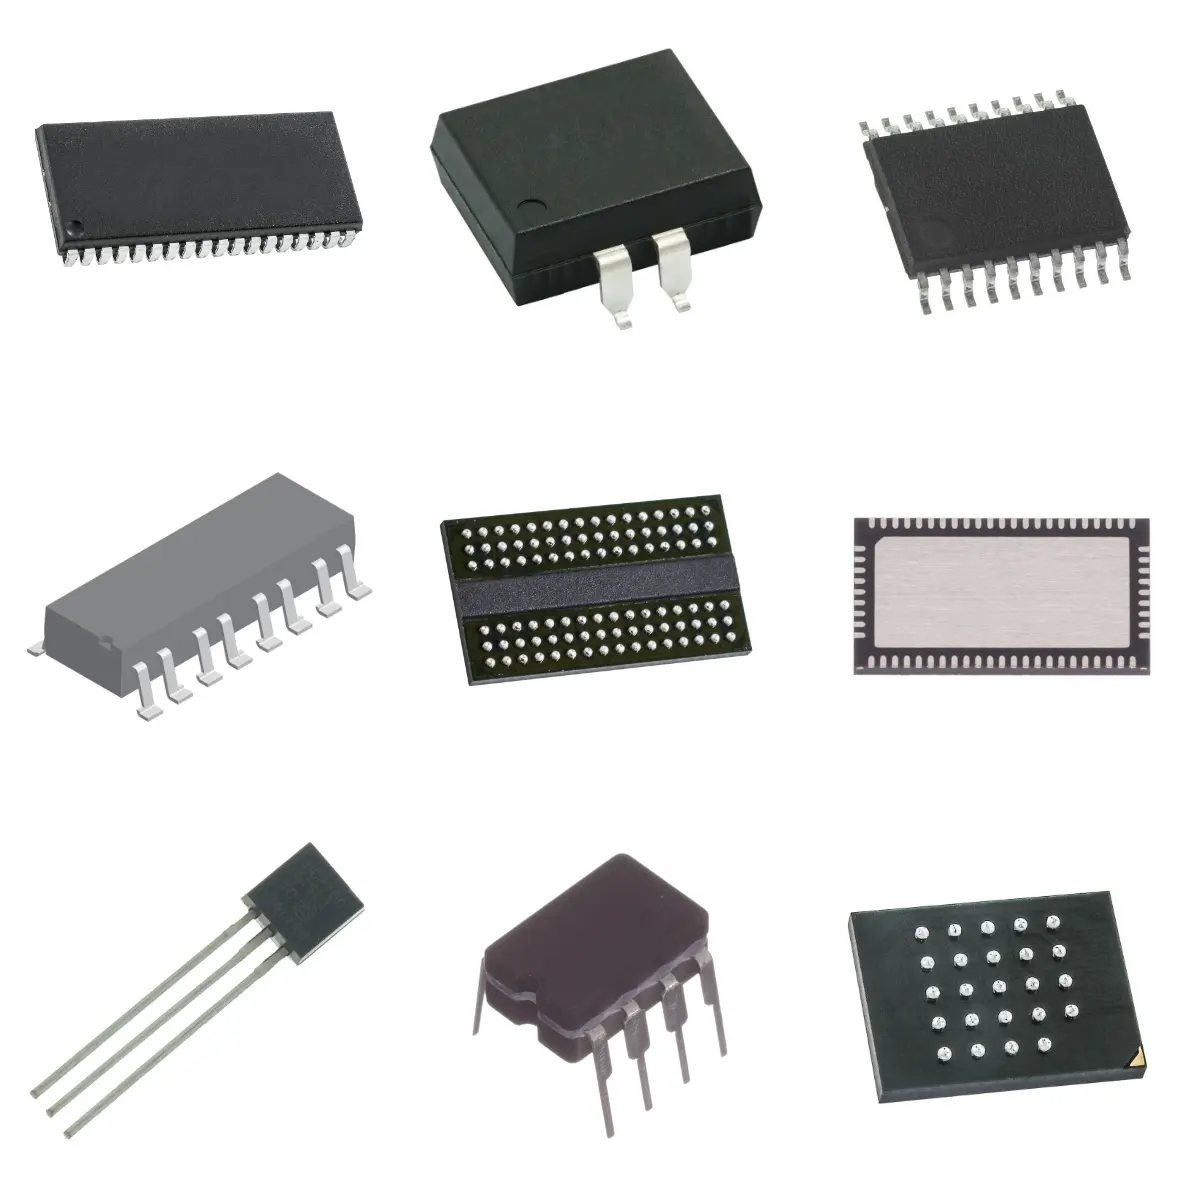 Komponen elektronik Chip IC sirkuit terintegrasi XC5VLX110-3FFG1760C sirkuit terpadu kualitas baik